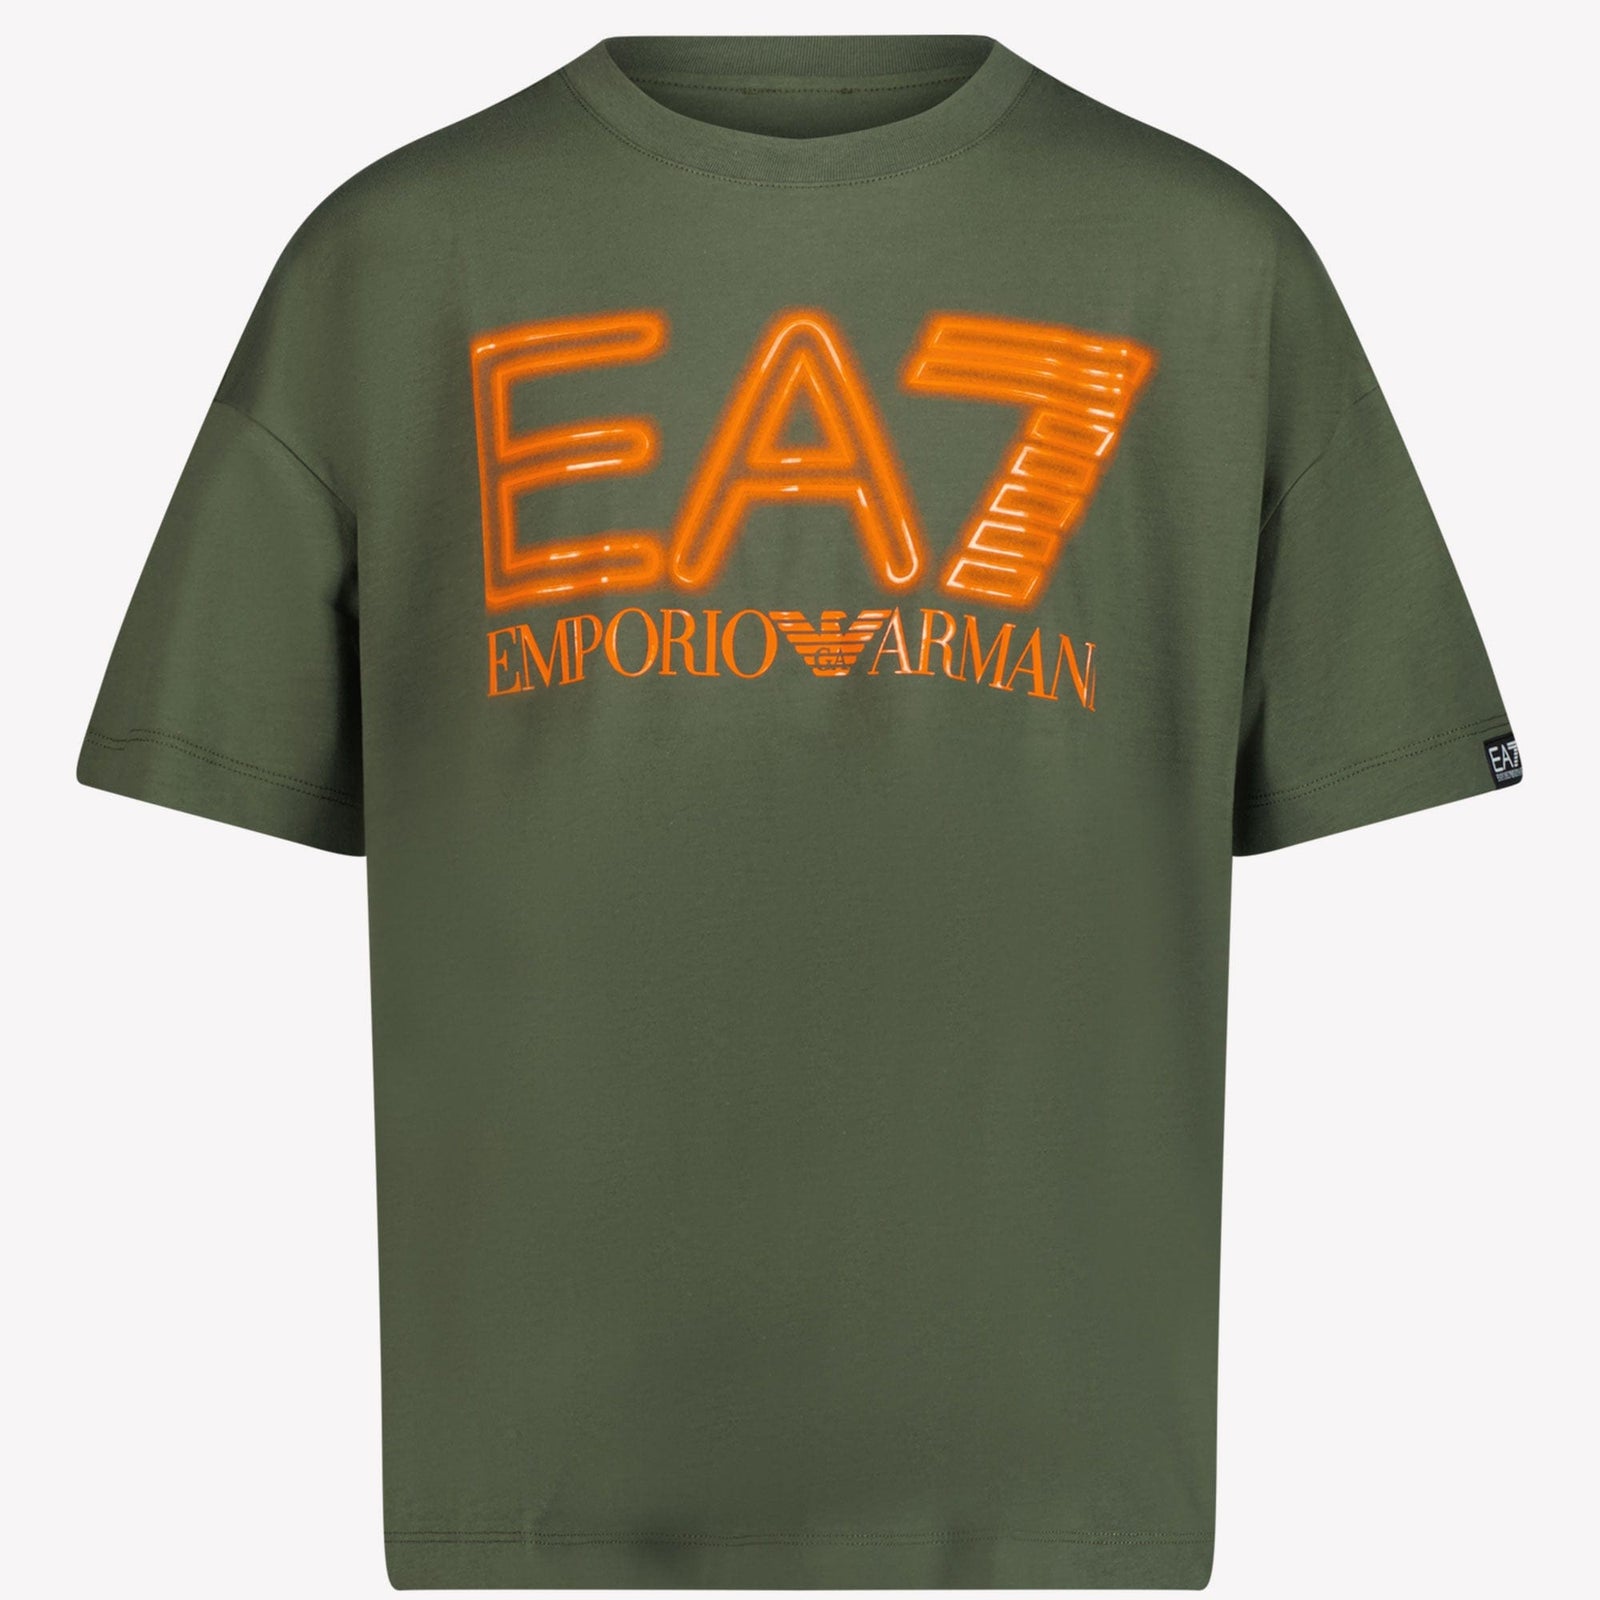 Ea7 Kinder Jongens T-shirt Army 4Y